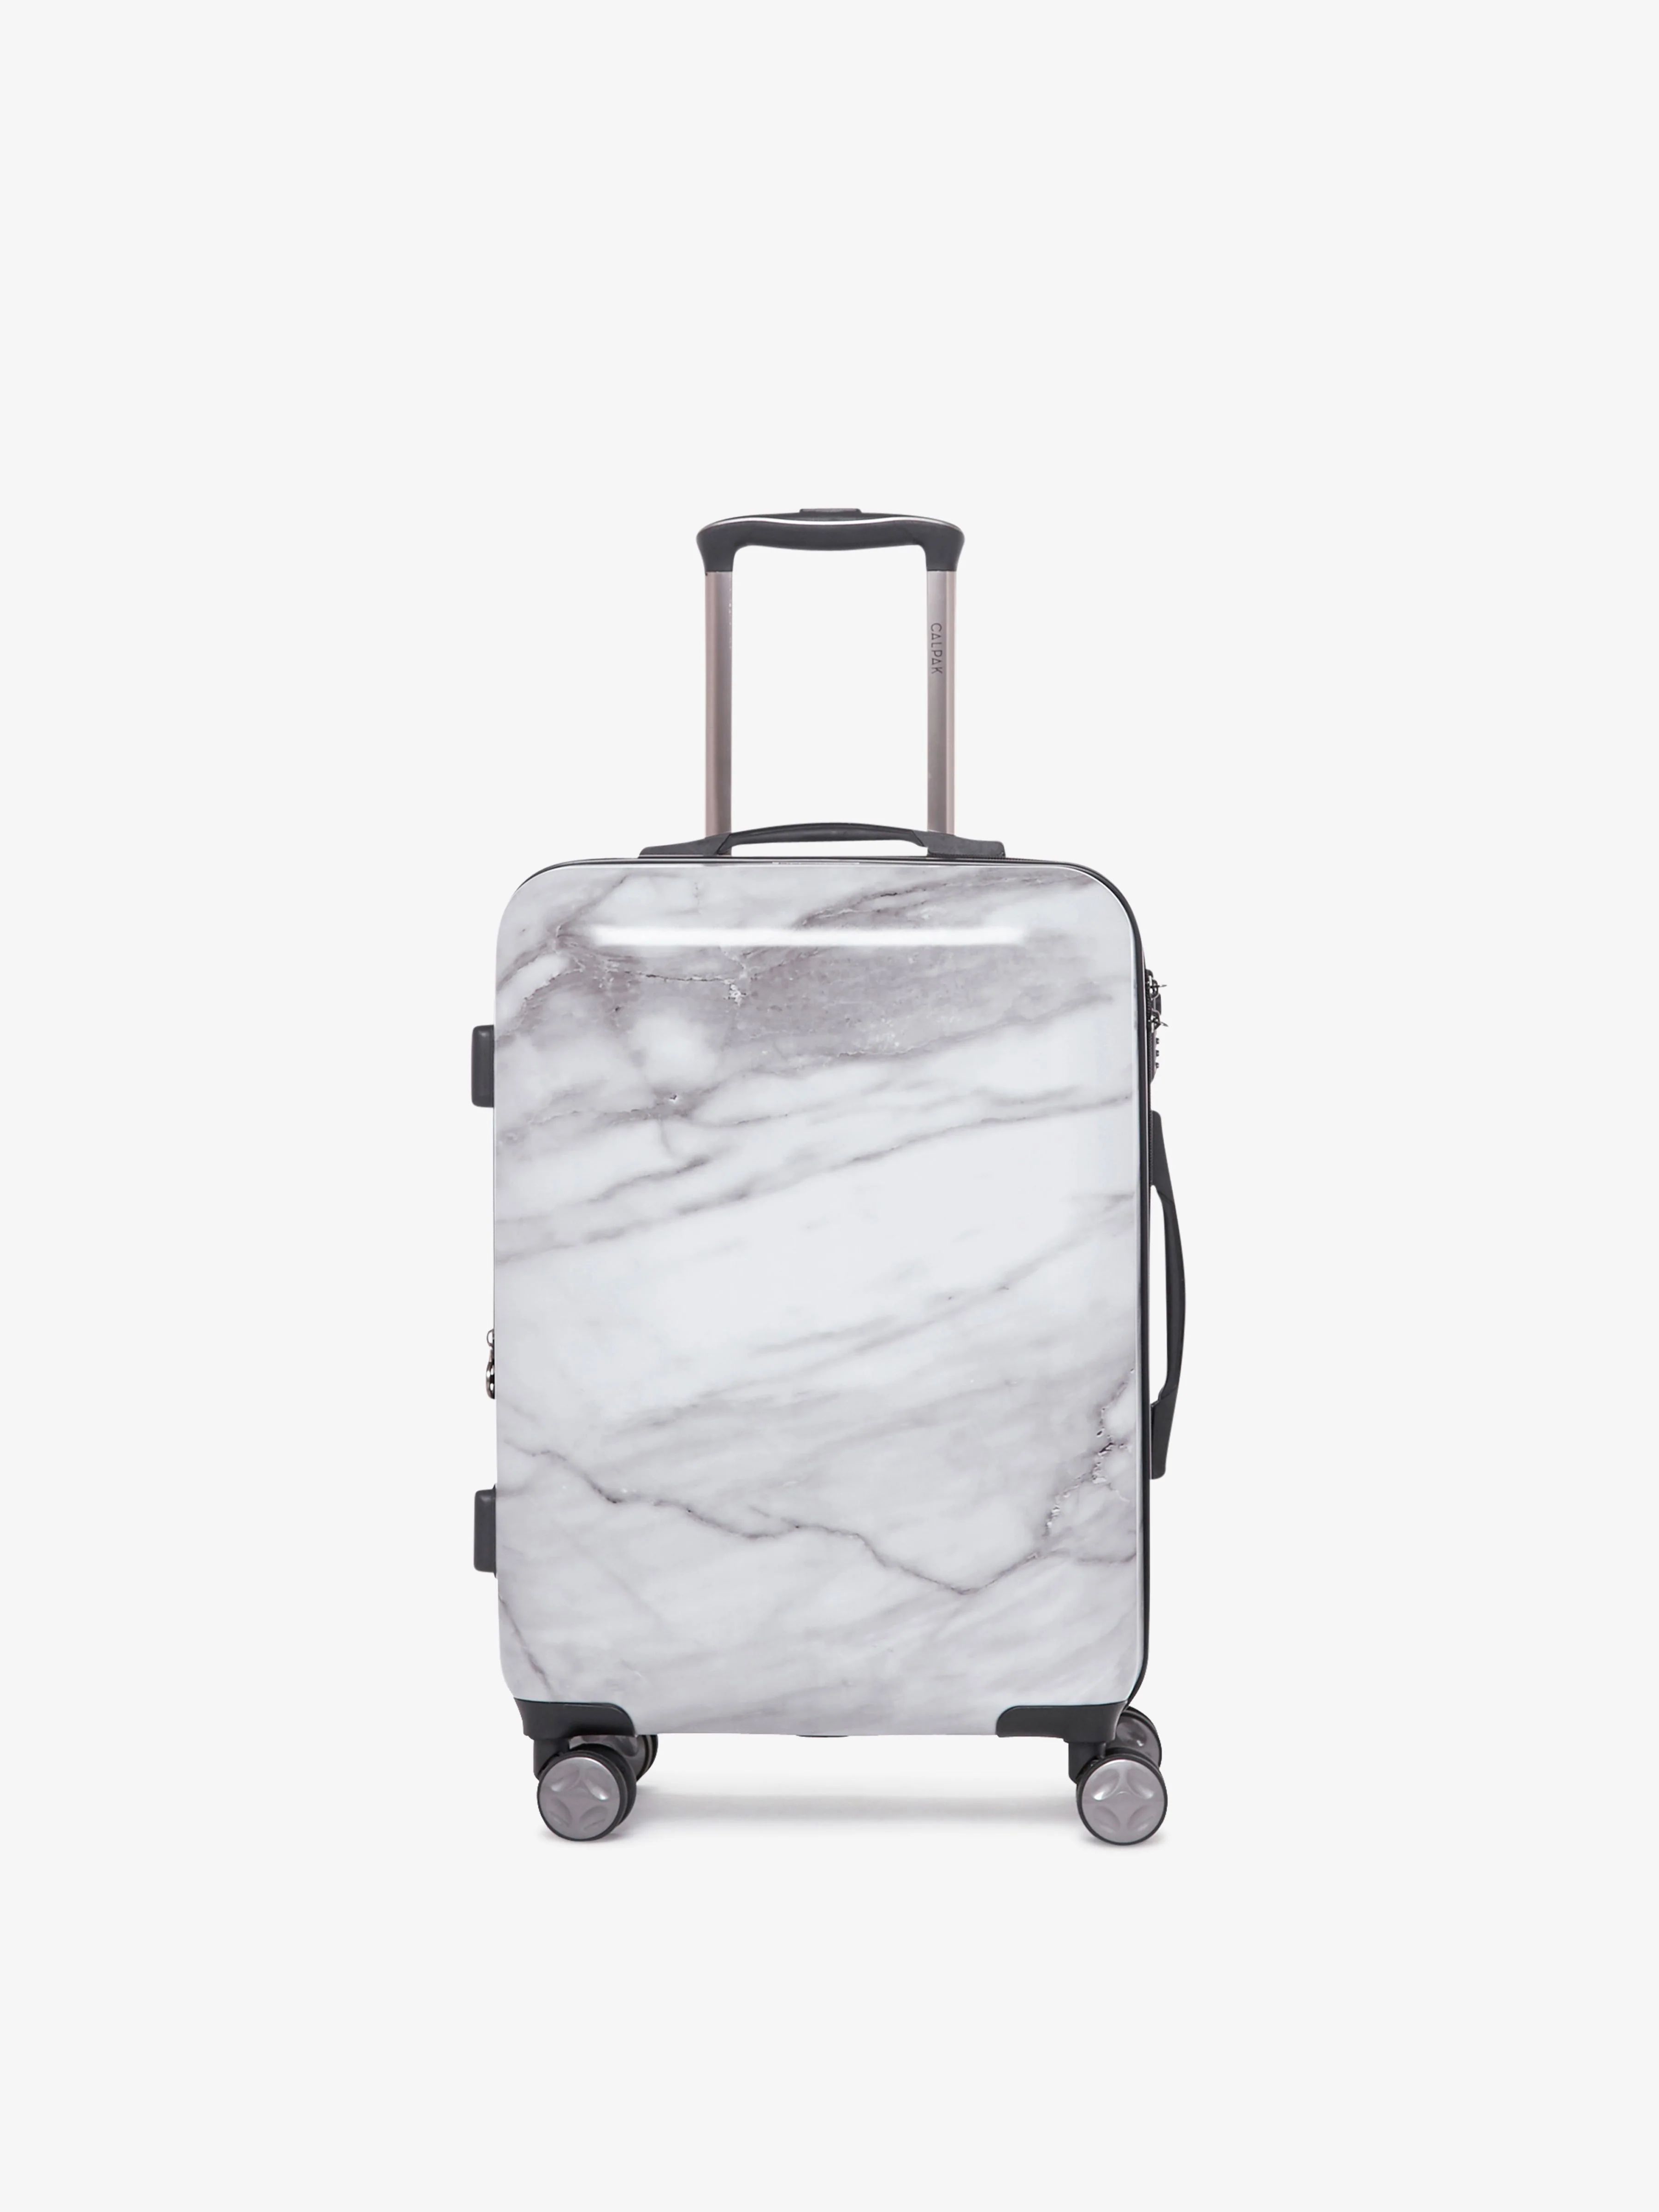 Insulated Lunch Bag for Work & Travel | CALPAK | CALPAK Travel